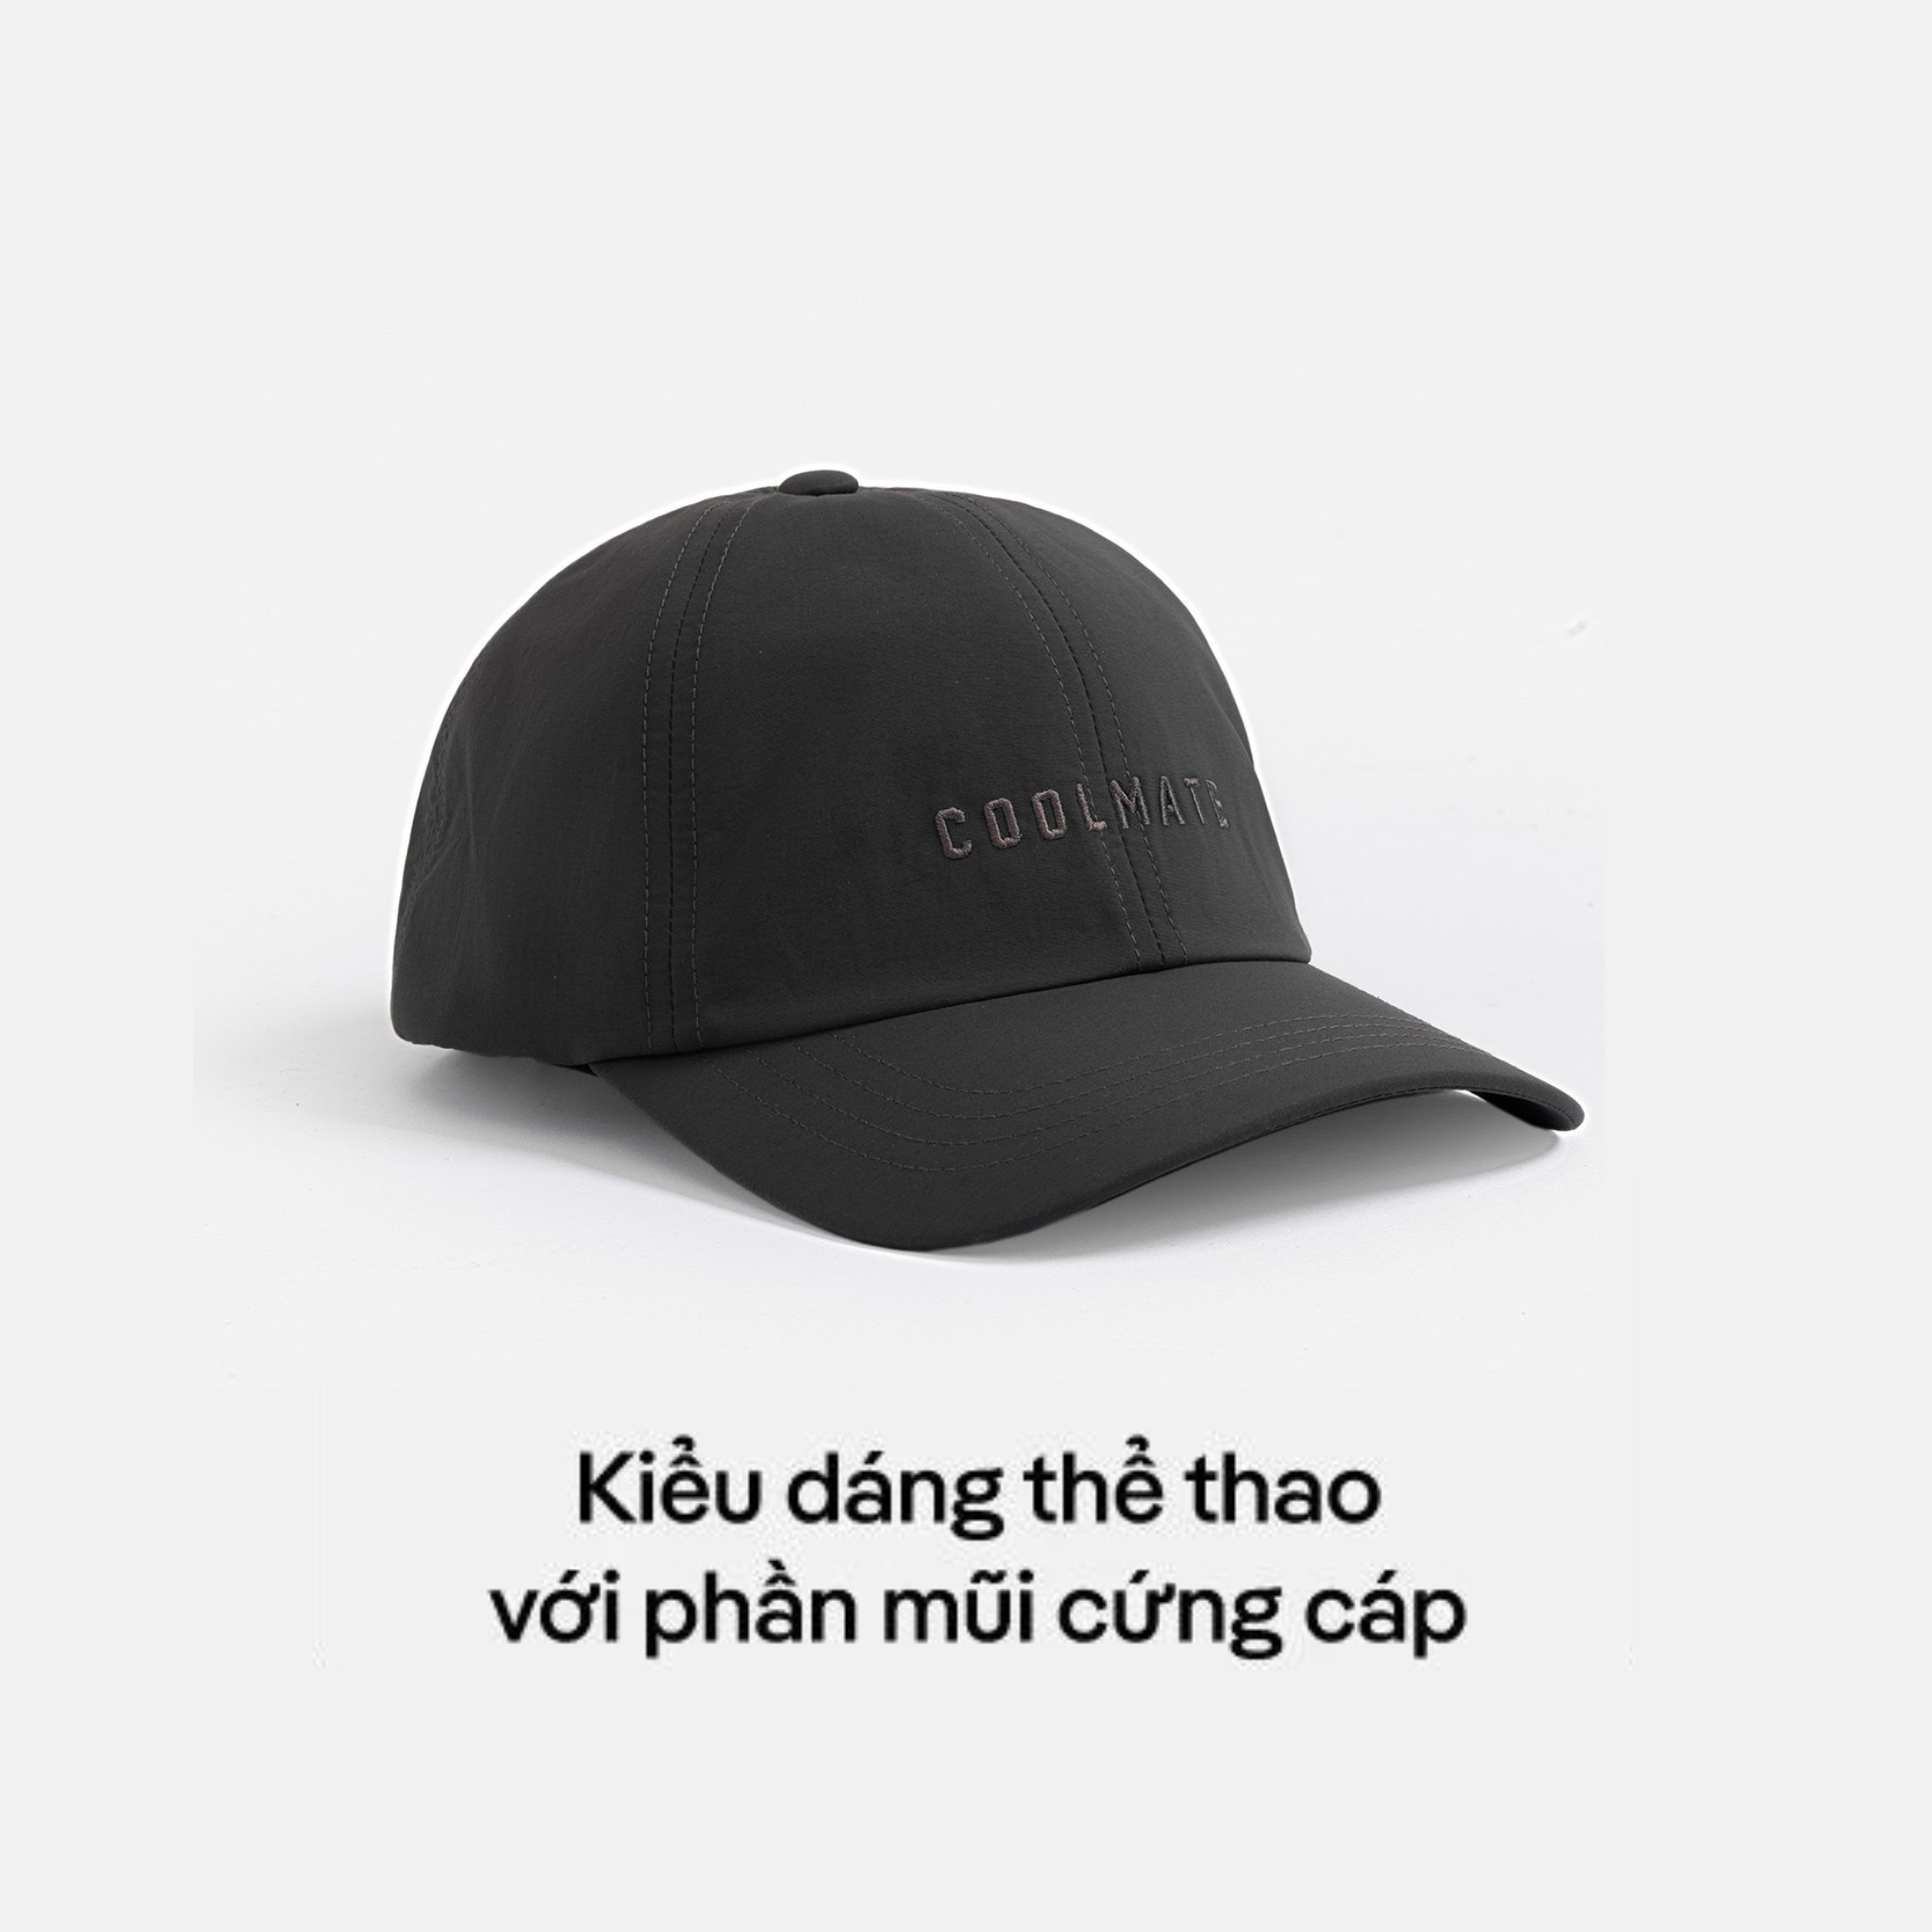 [CHỈ 10.10 TẶNG QUÀ ĐƠN 329K]Mũ/Nón lưỡi trai nam Classic Cap thêu logo - thương hiệu Coolmate